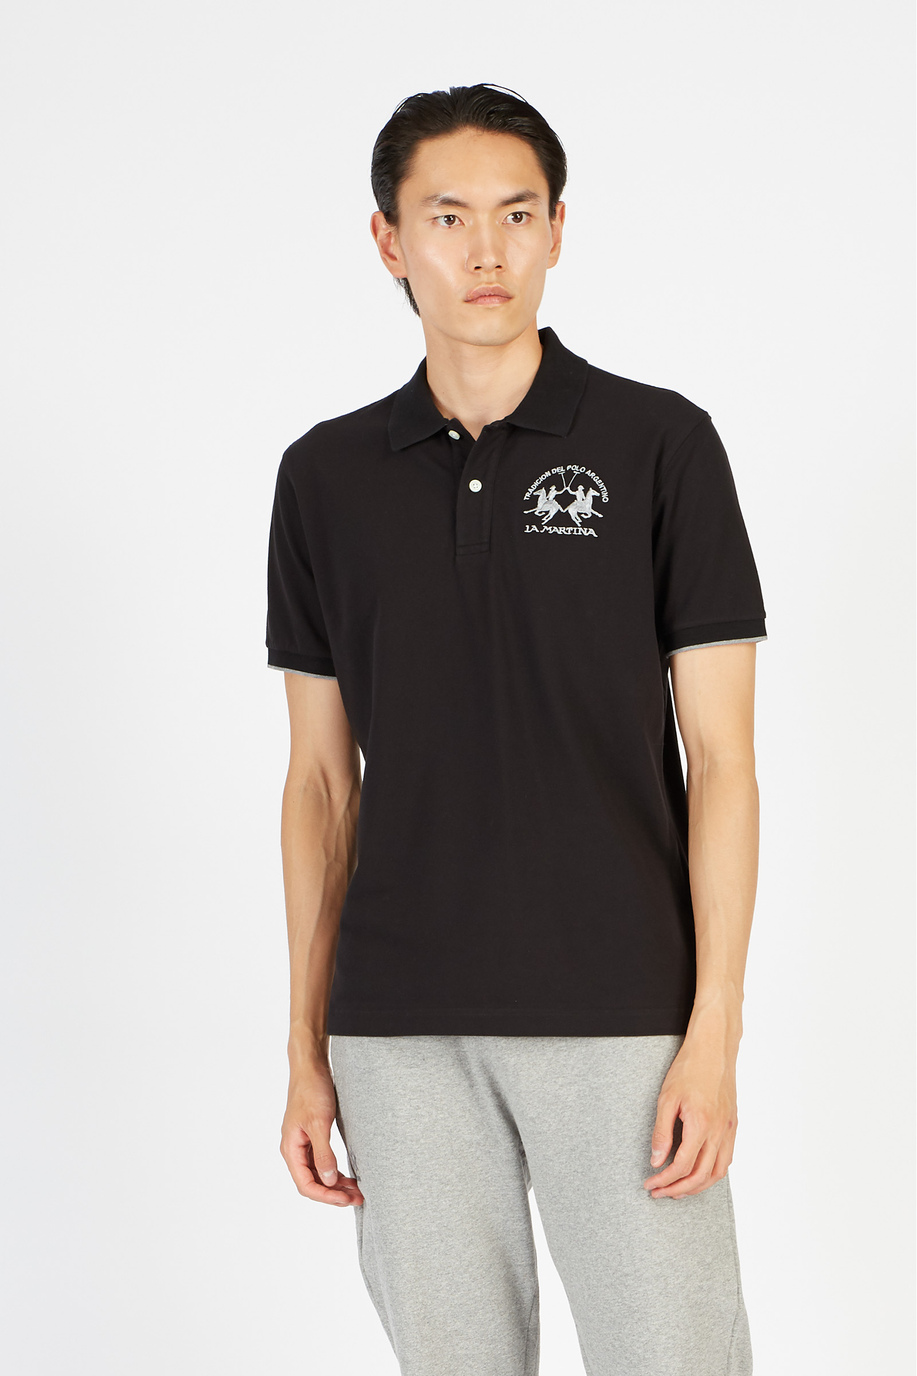 Men's polo shirt in a regular fit - Miguel - Classic Basics | La Martina - Official Online Shop